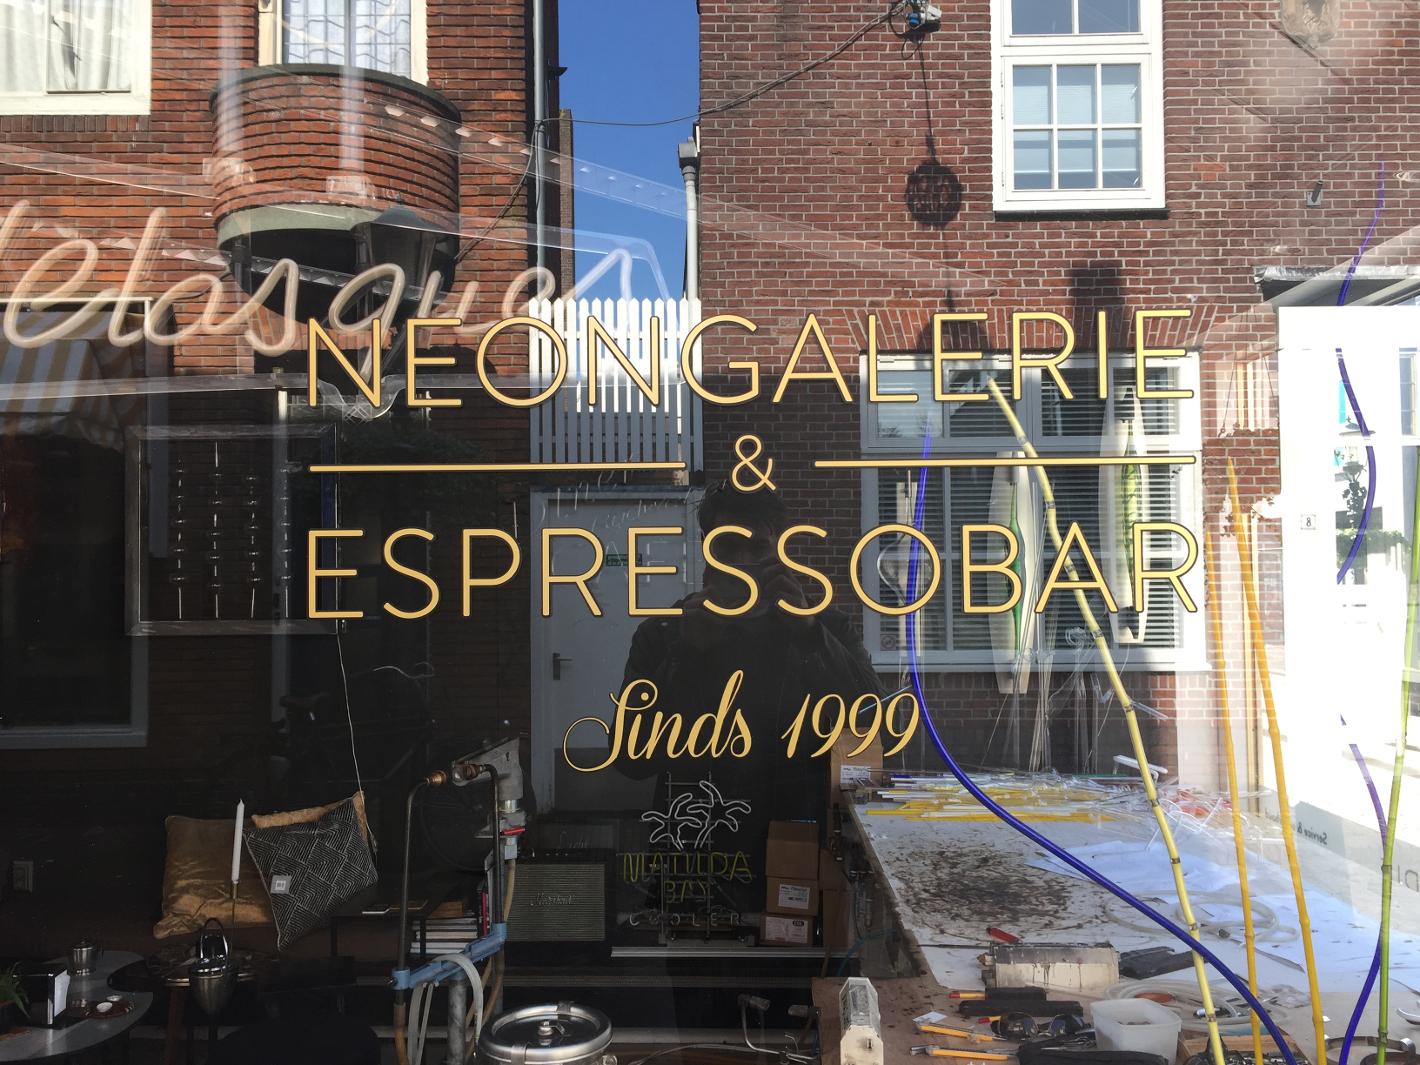 Photo Ray of Light Neongalerie & Espressobar en Alkmaar, Manger & boire, Café, thé et gâteaux, Sites touristiques - #1